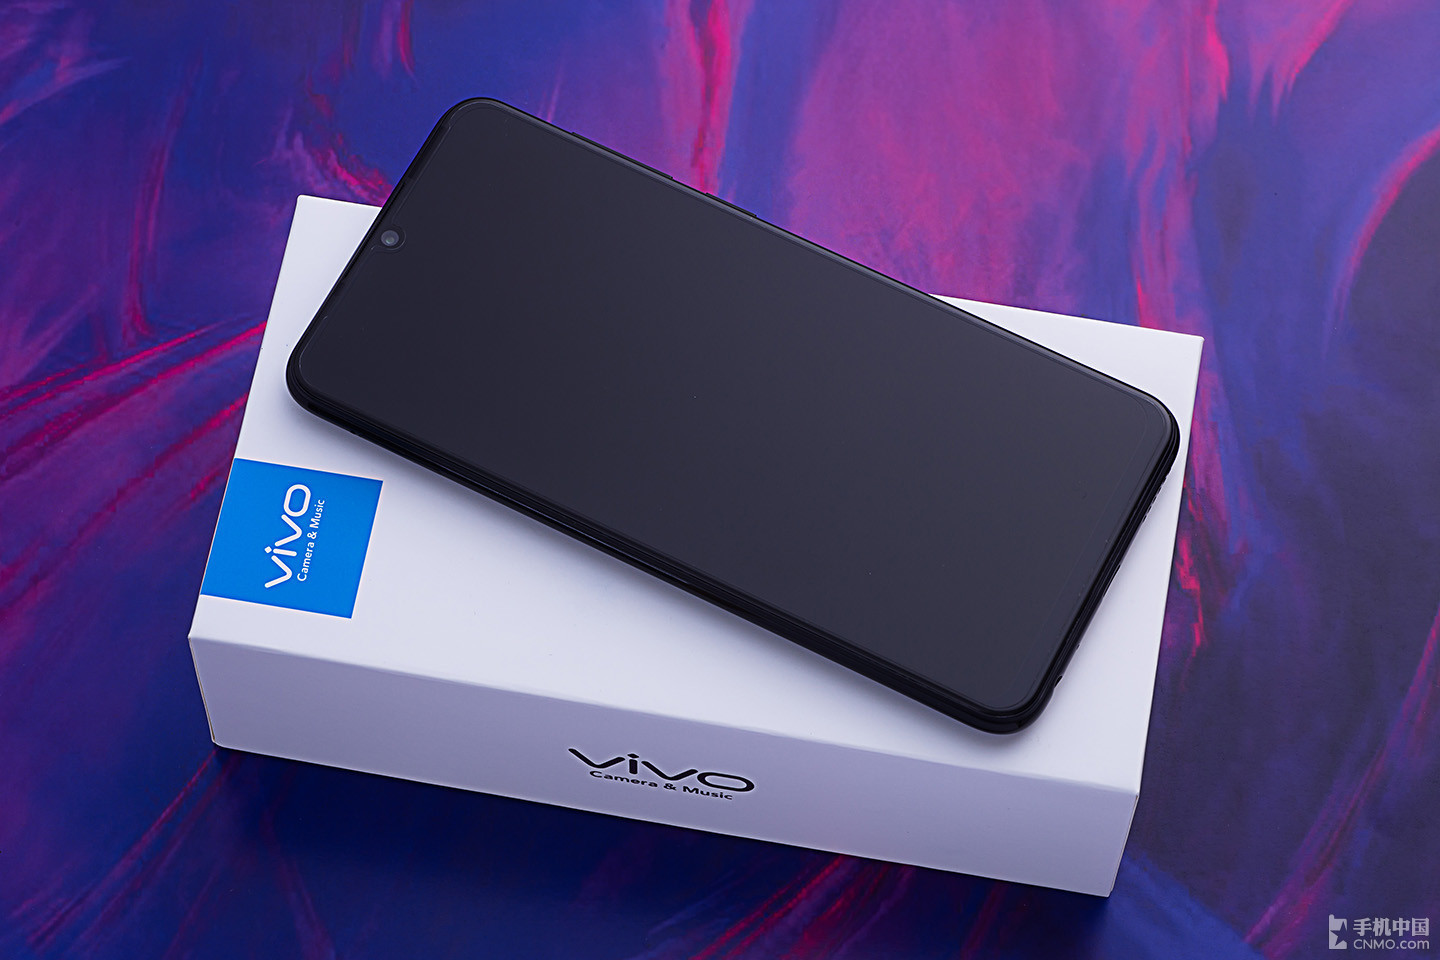 Vivo Z3 chính thức được ra mắt với Snapdragon
660/710, RAM 4/6GB, camera kép, màn hình Halo Fullview, giá
từ 5.3 triệu